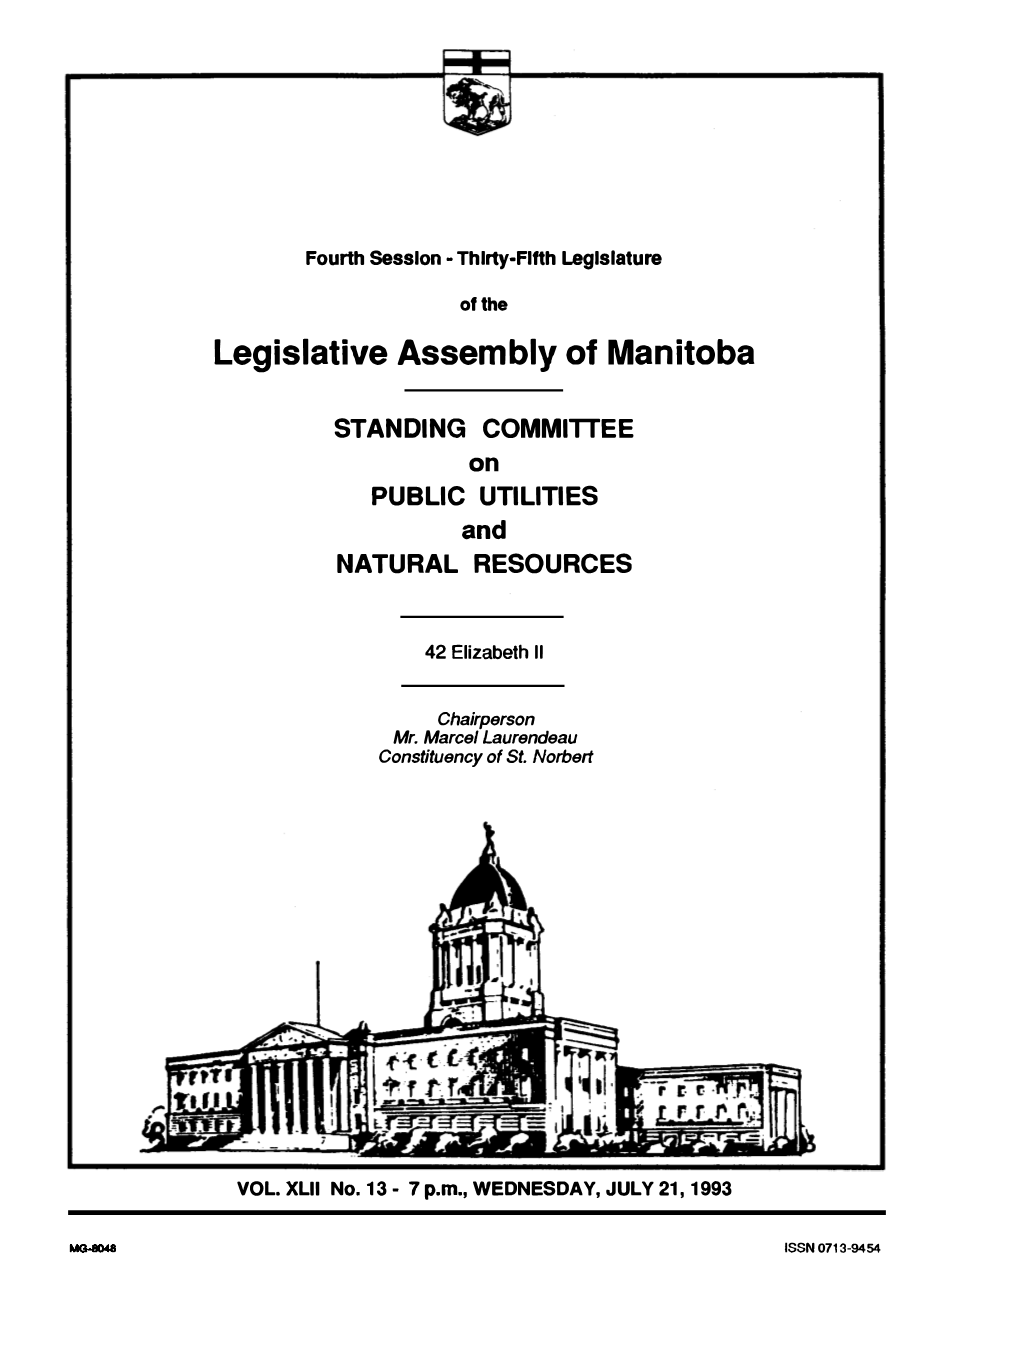 Legislative Assembly of Manitoba